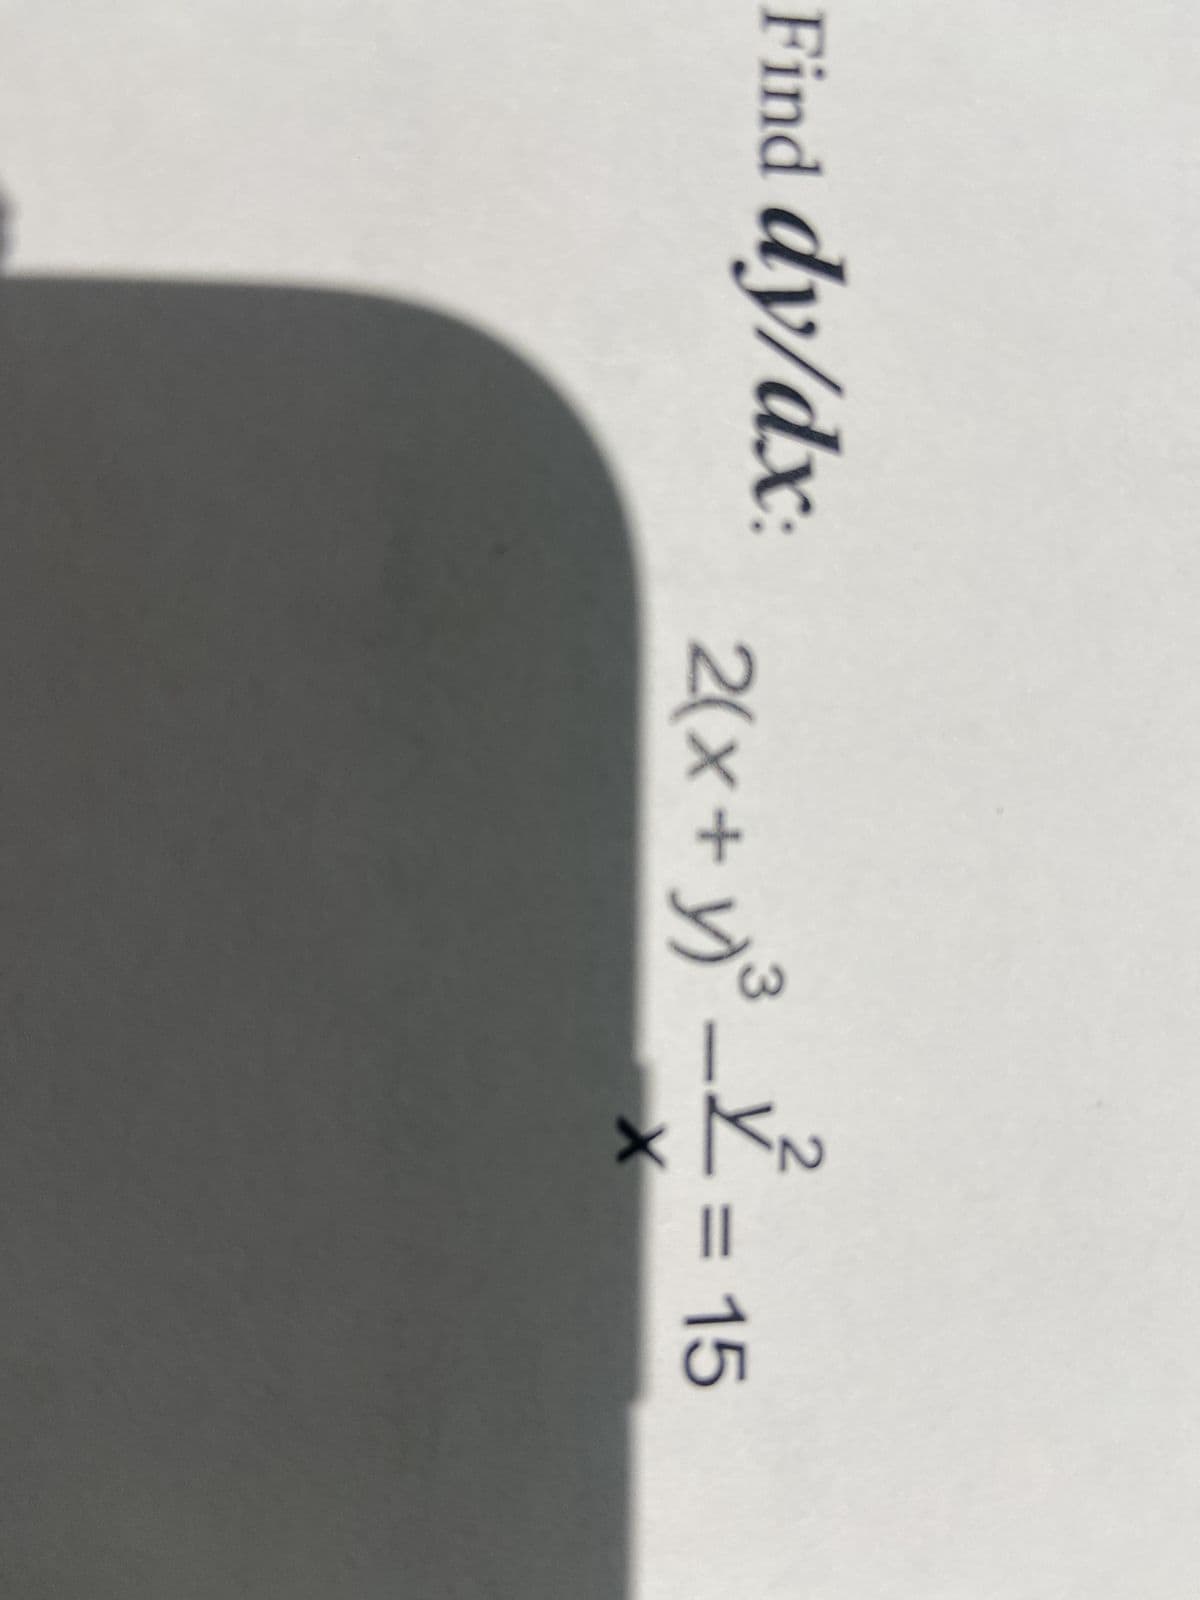 Find dy/dx: 2(x+y)³-=15
3
X